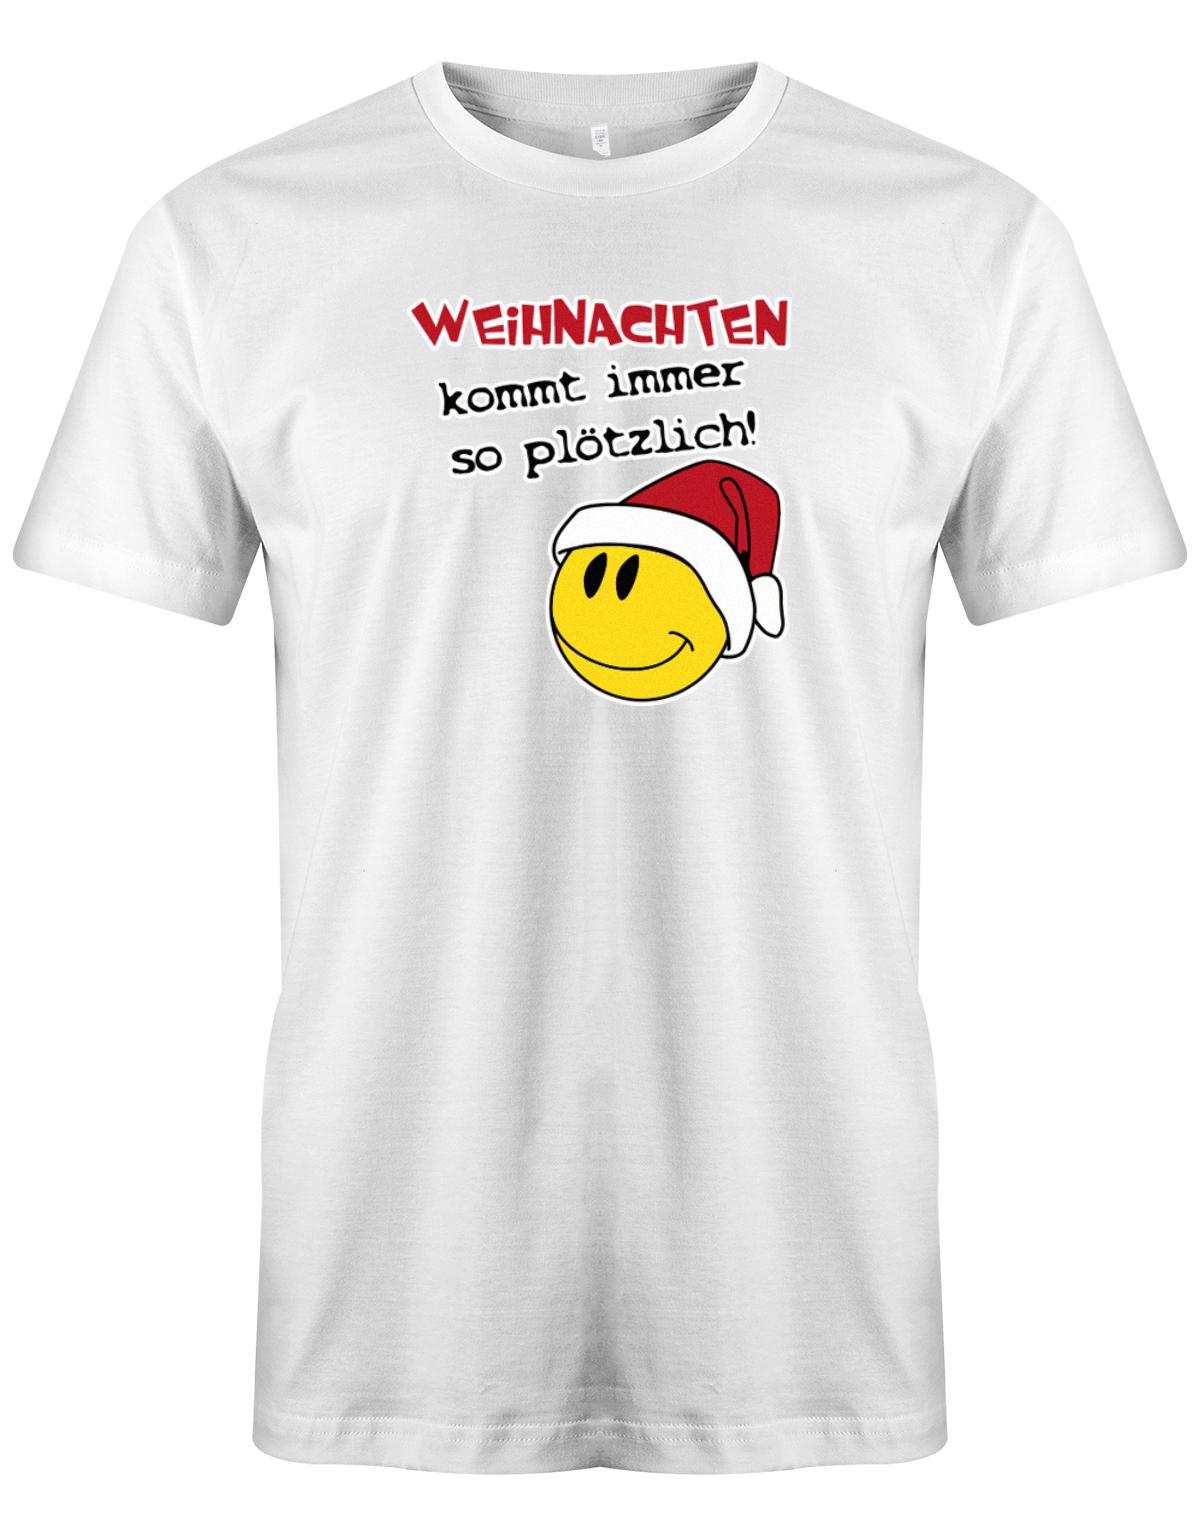 Weihnachten-kommt-immer-so-pl-tzlich-Herren-Shirt-Weiss